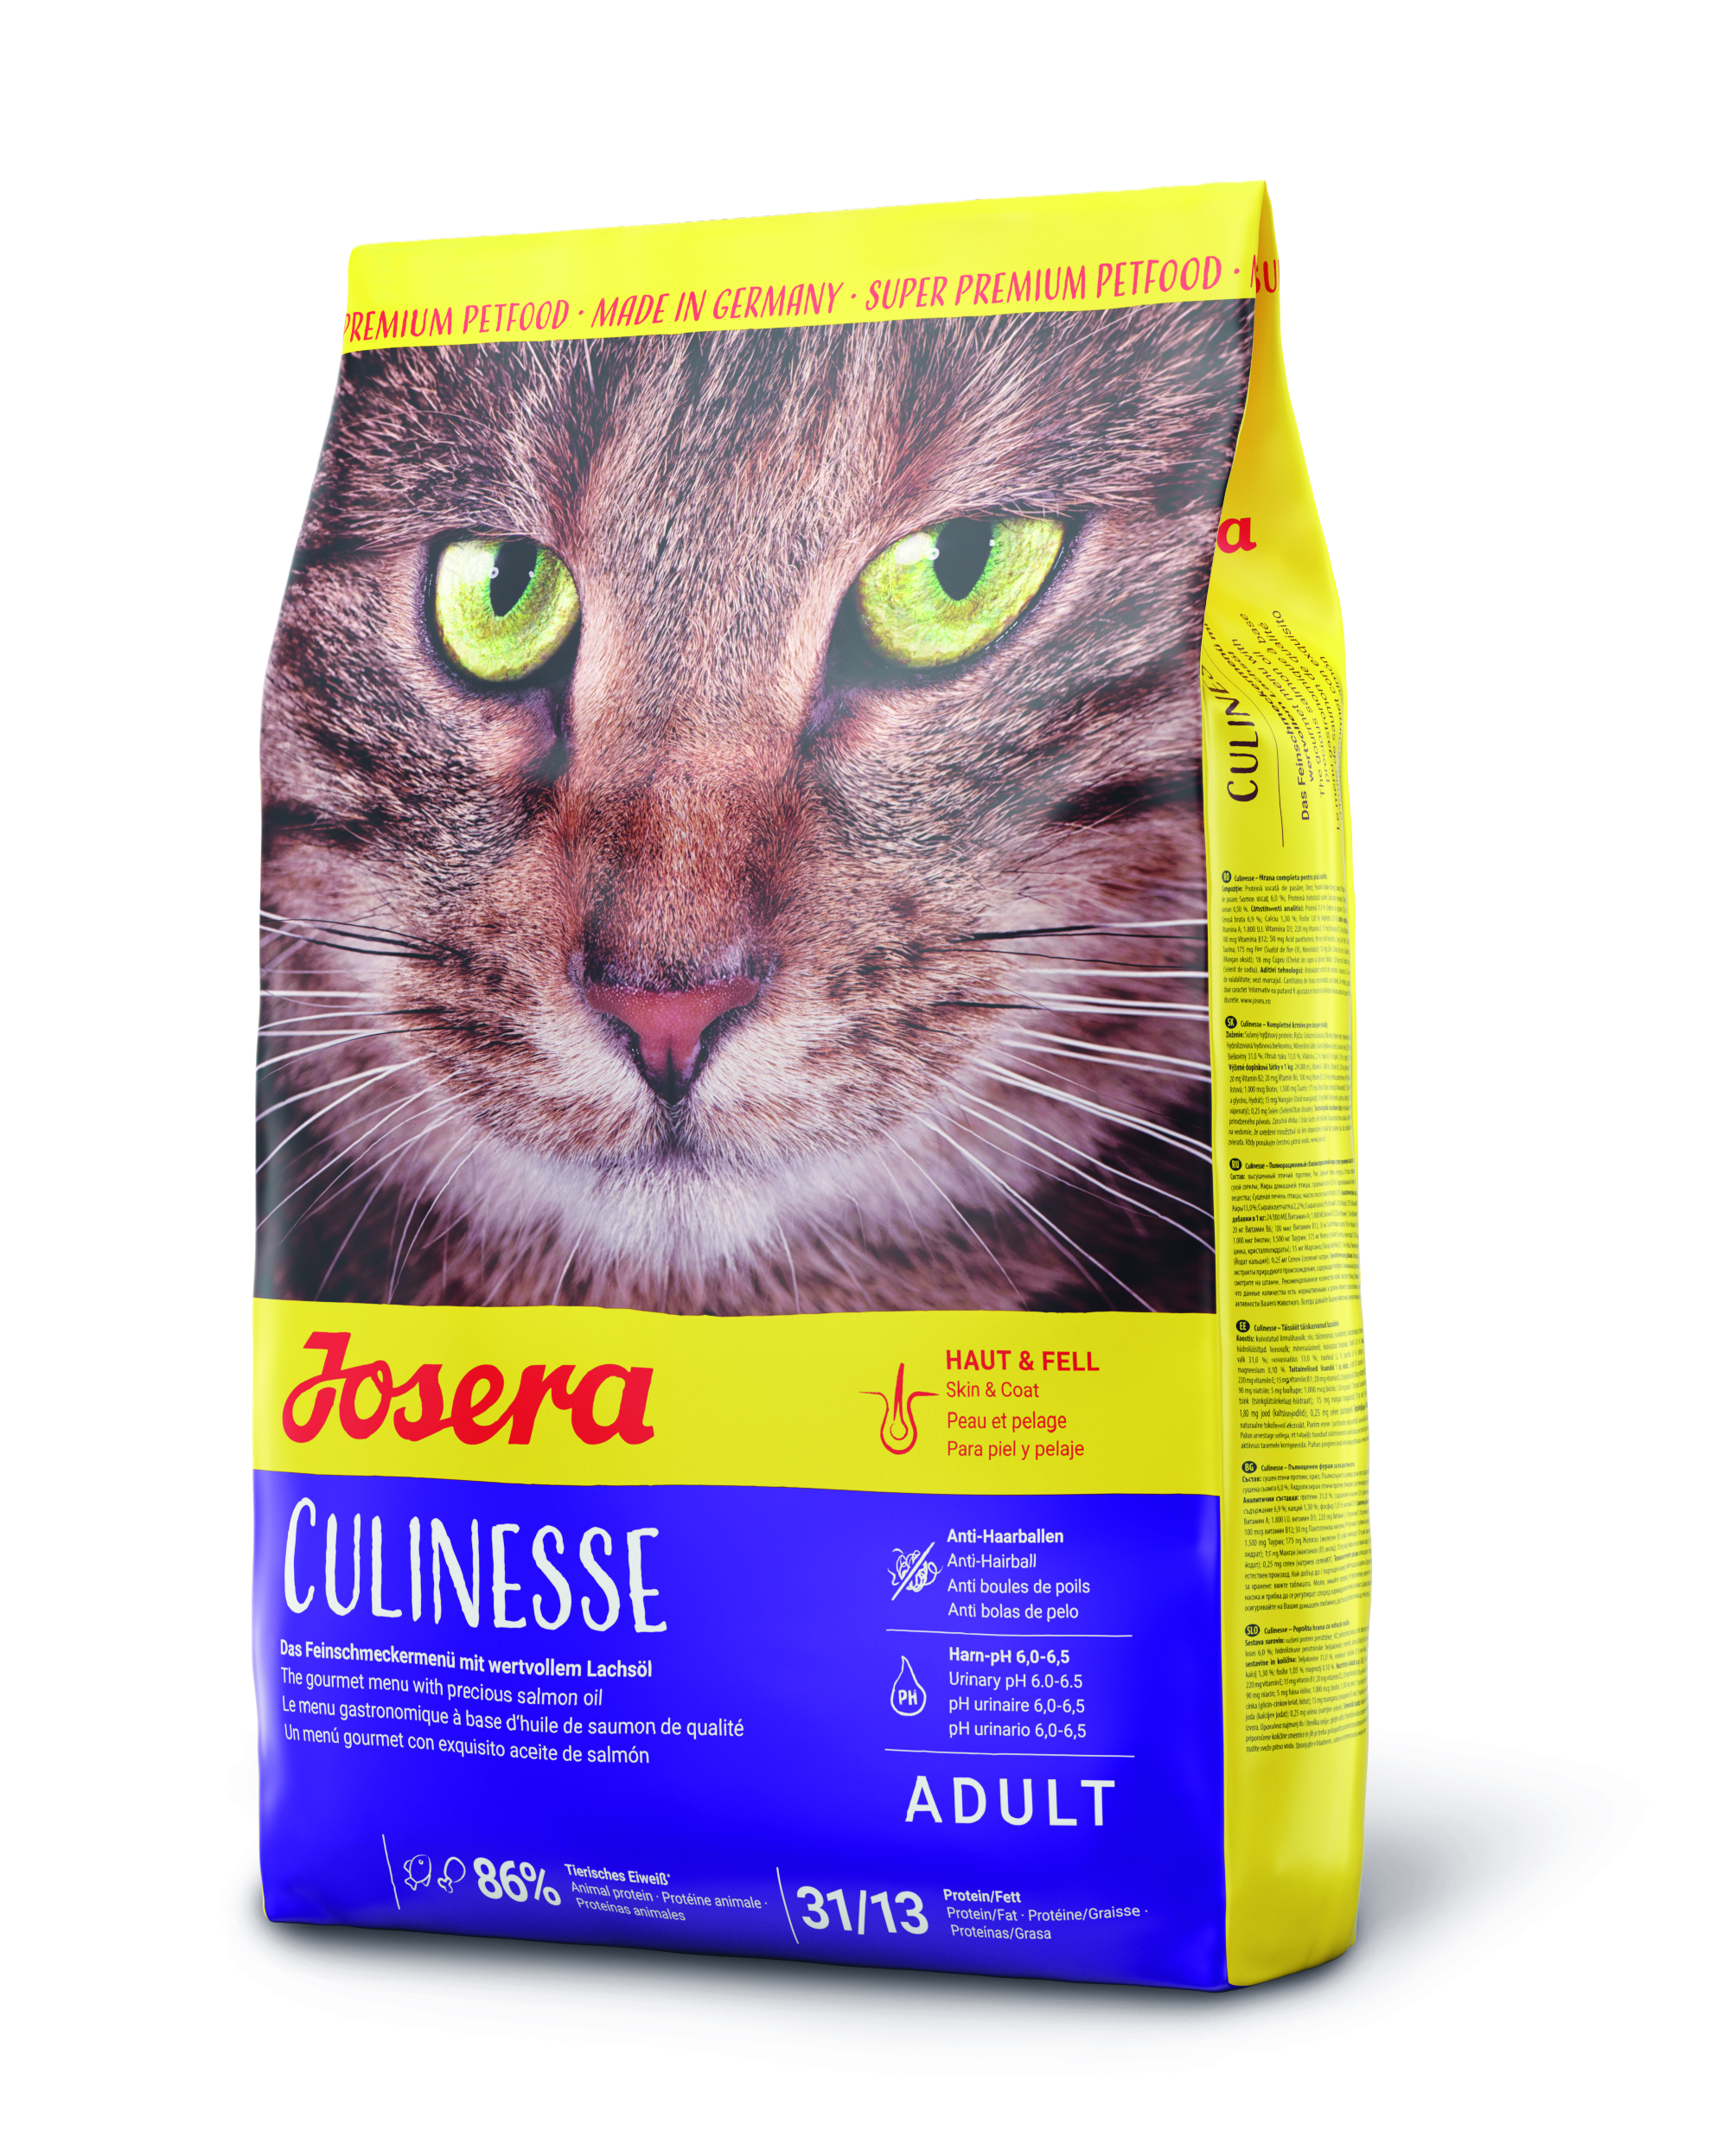 GRUNER Josera Culinesse 4,25kg neu Katzenfutter Super Premium